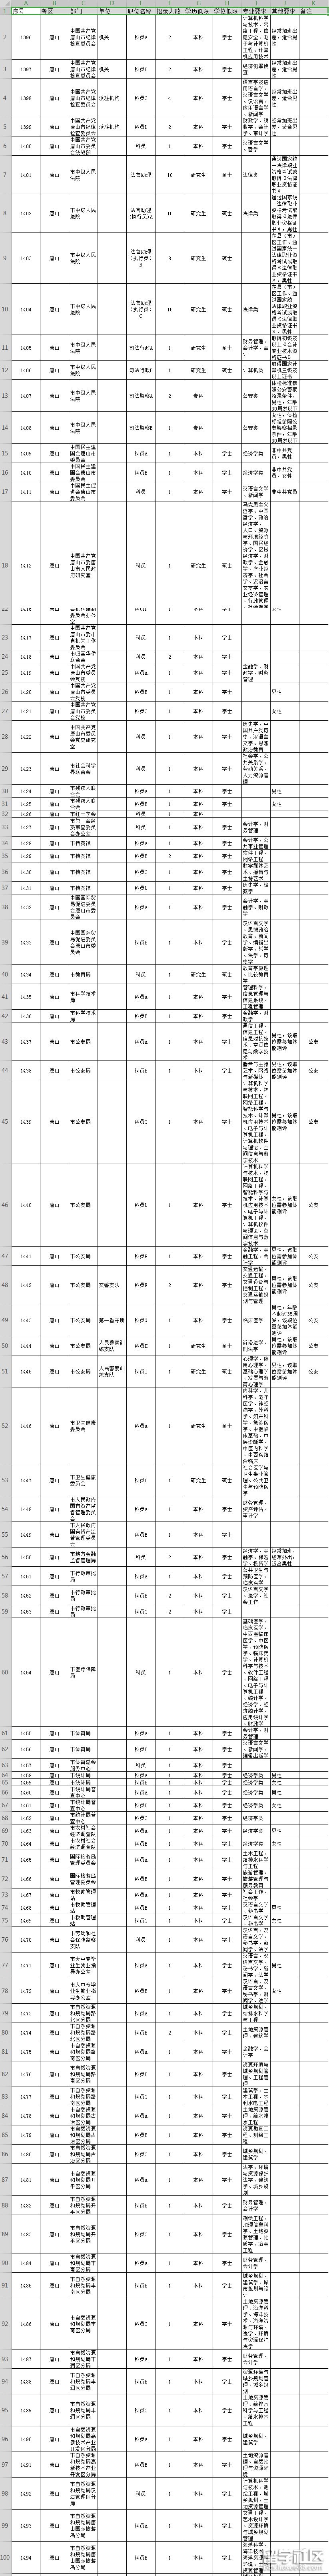 2019年河北省公务员考试职位表(唐山市)